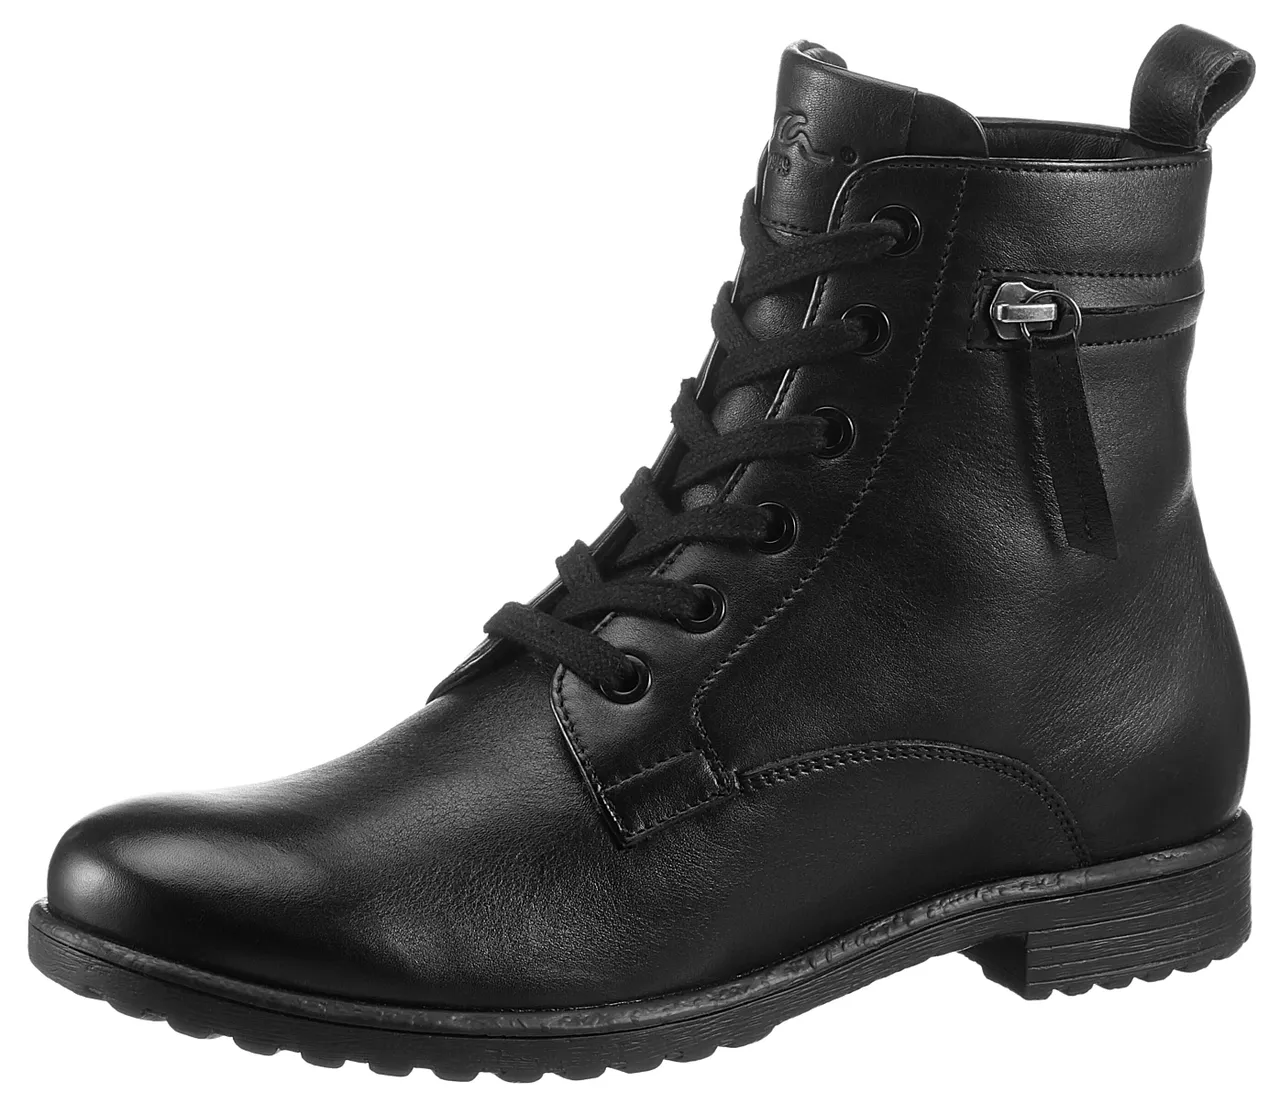 Schnürstiefelette ARA "LIVERPOOL" Gr. 4,5 (37,5), schwarz Damen Schuhe Reißverschlussstiefeletten mit Zierreißverschluss am Schaft